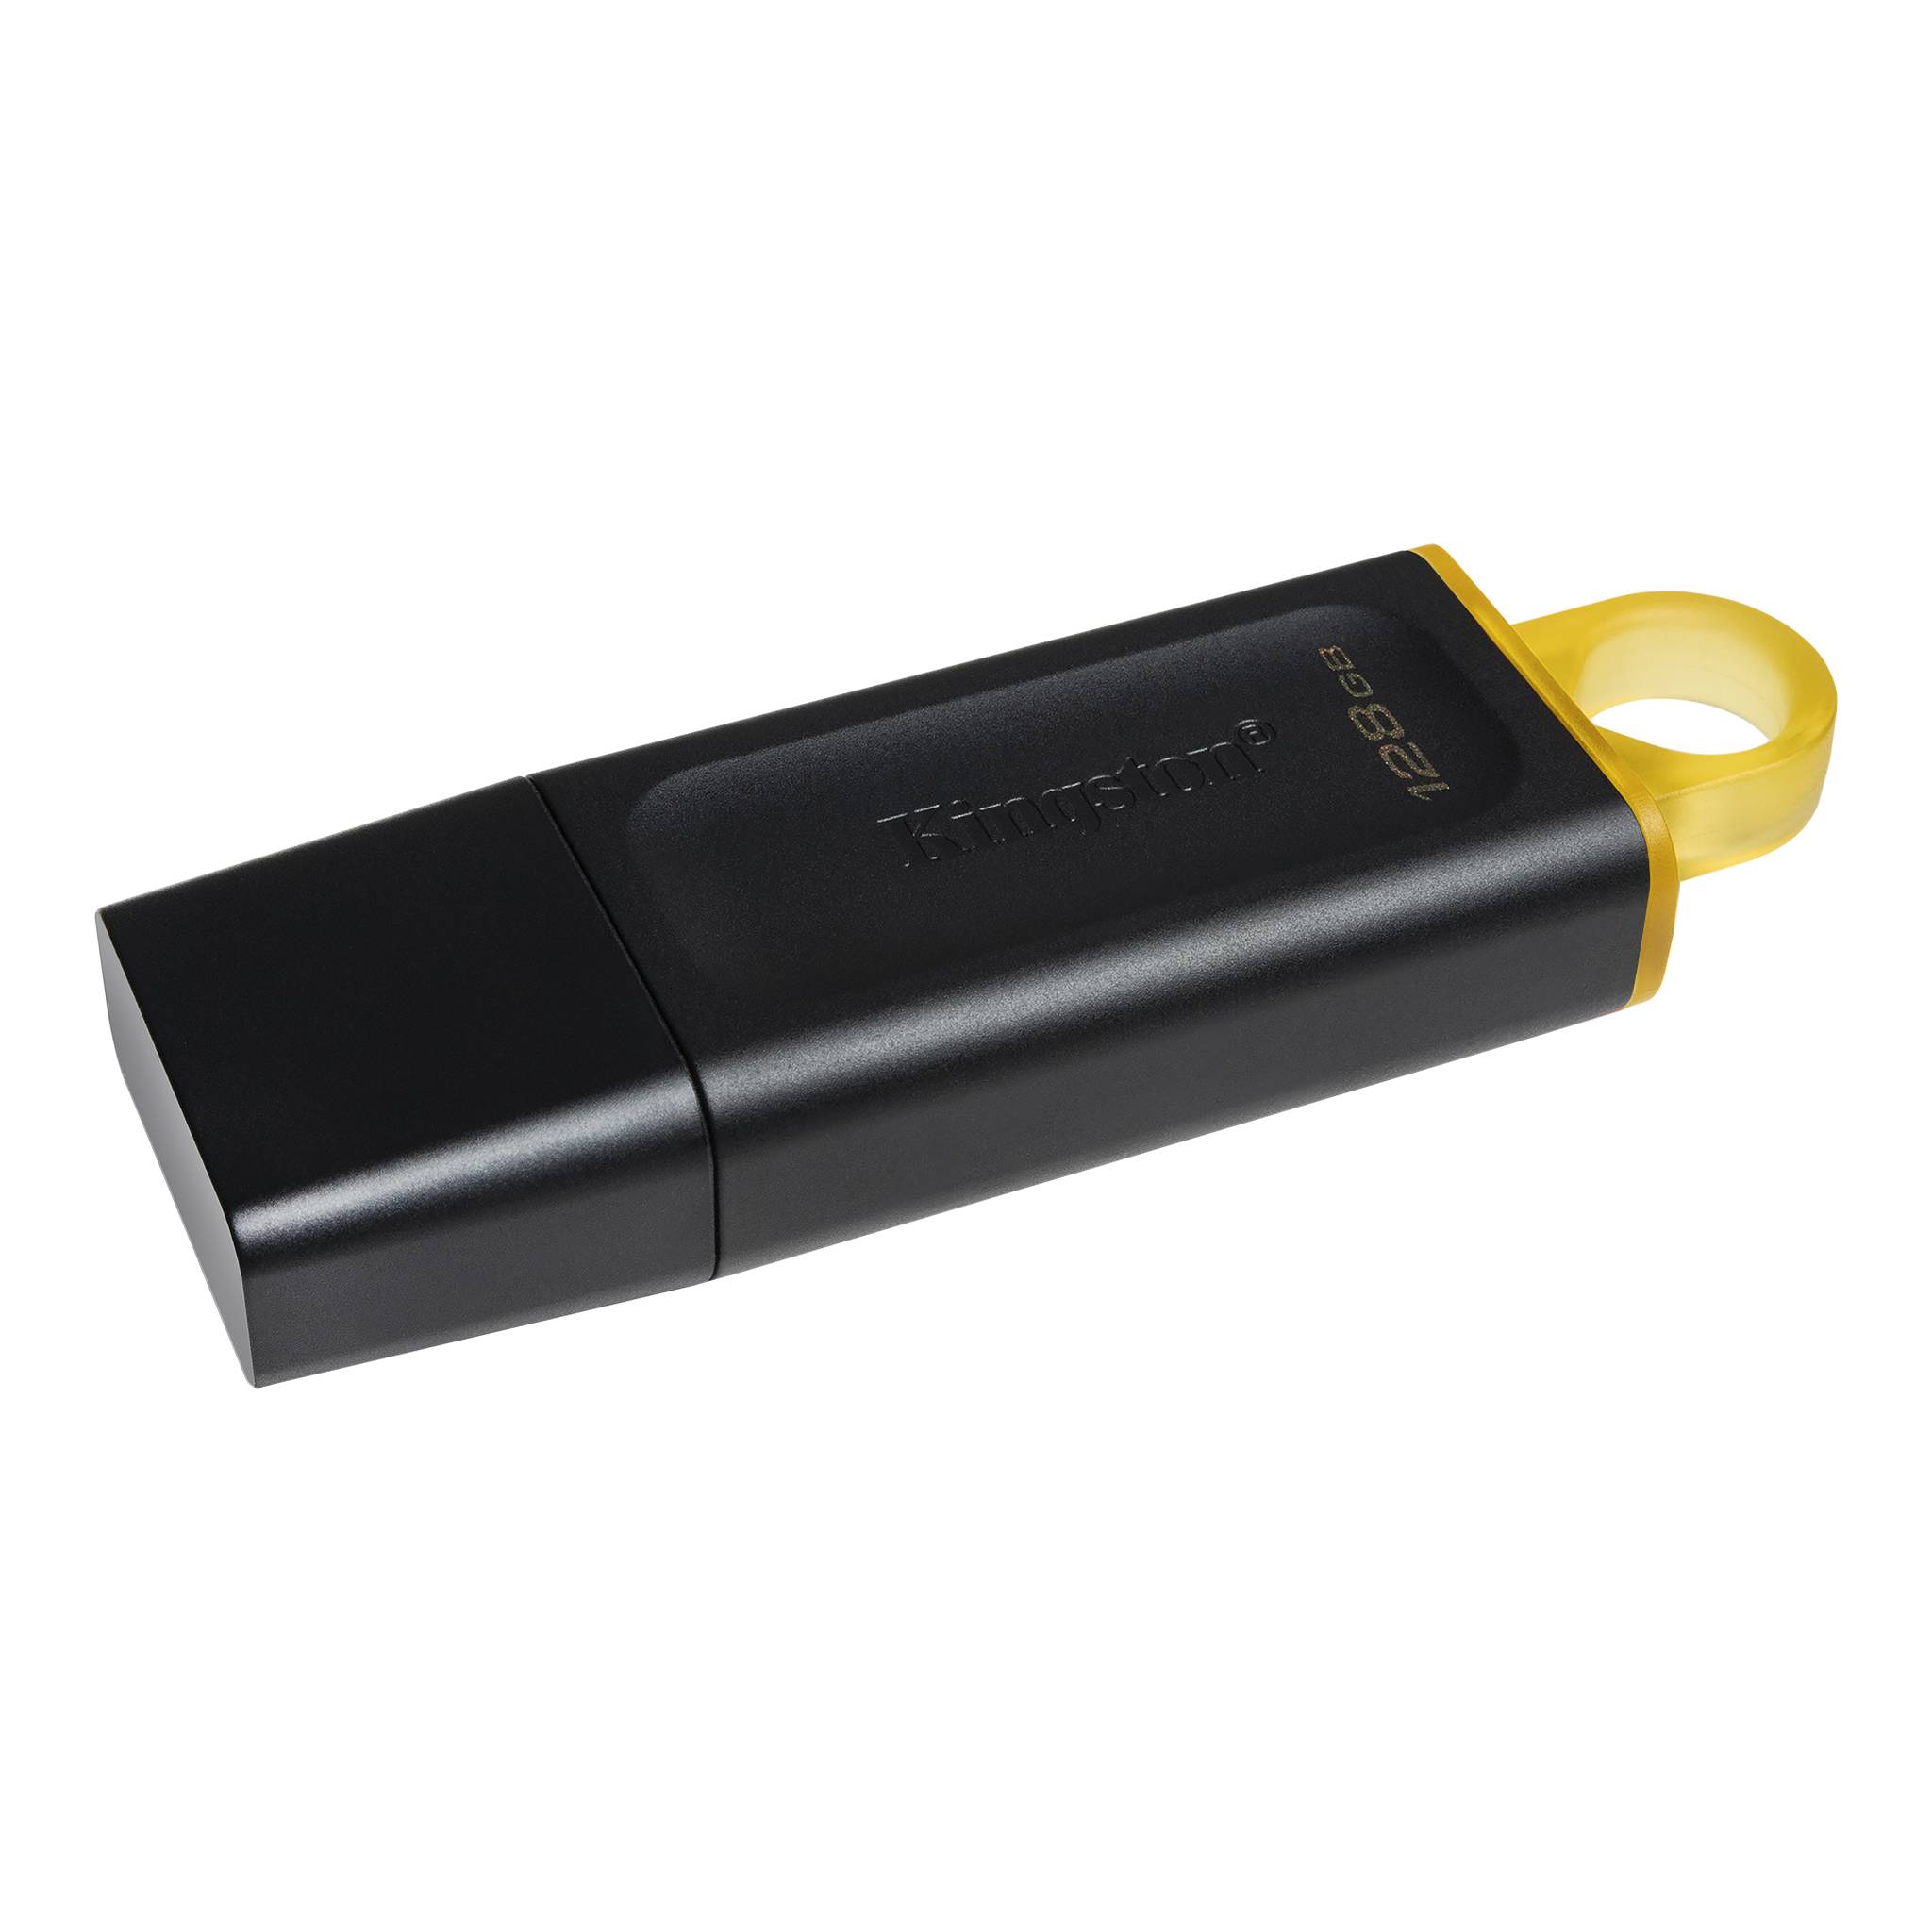 USB klíč Kingston DataTraveler exodu, 128 GB, USB 3.2, yellow